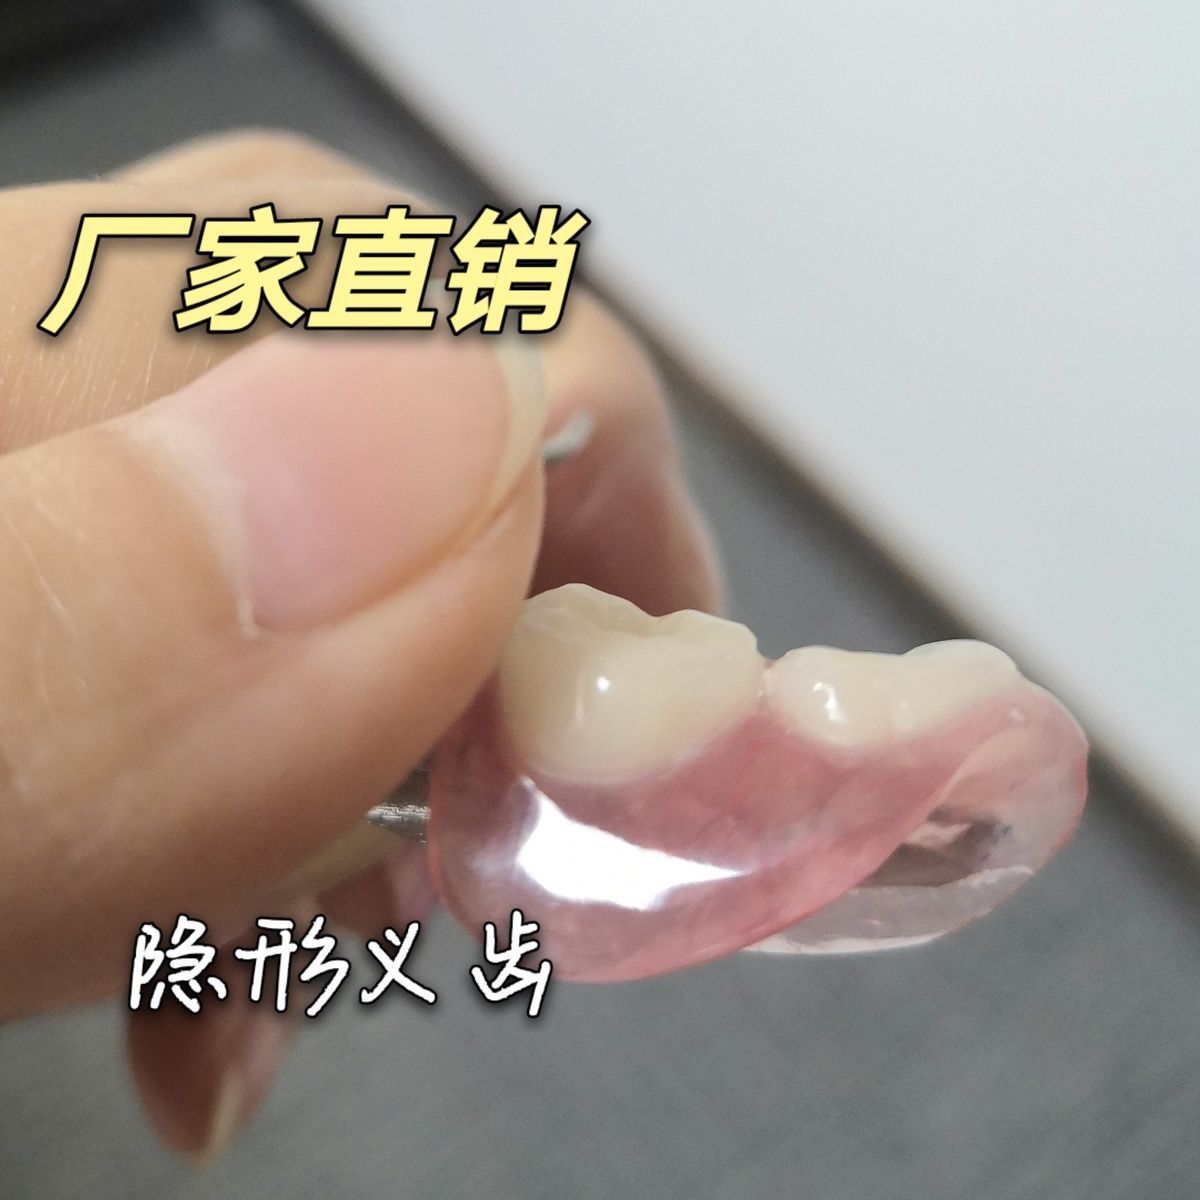 生产隐形义齿 树脂活动假牙 加工隐形牙假牙义齿活动牙种植临时牙【1